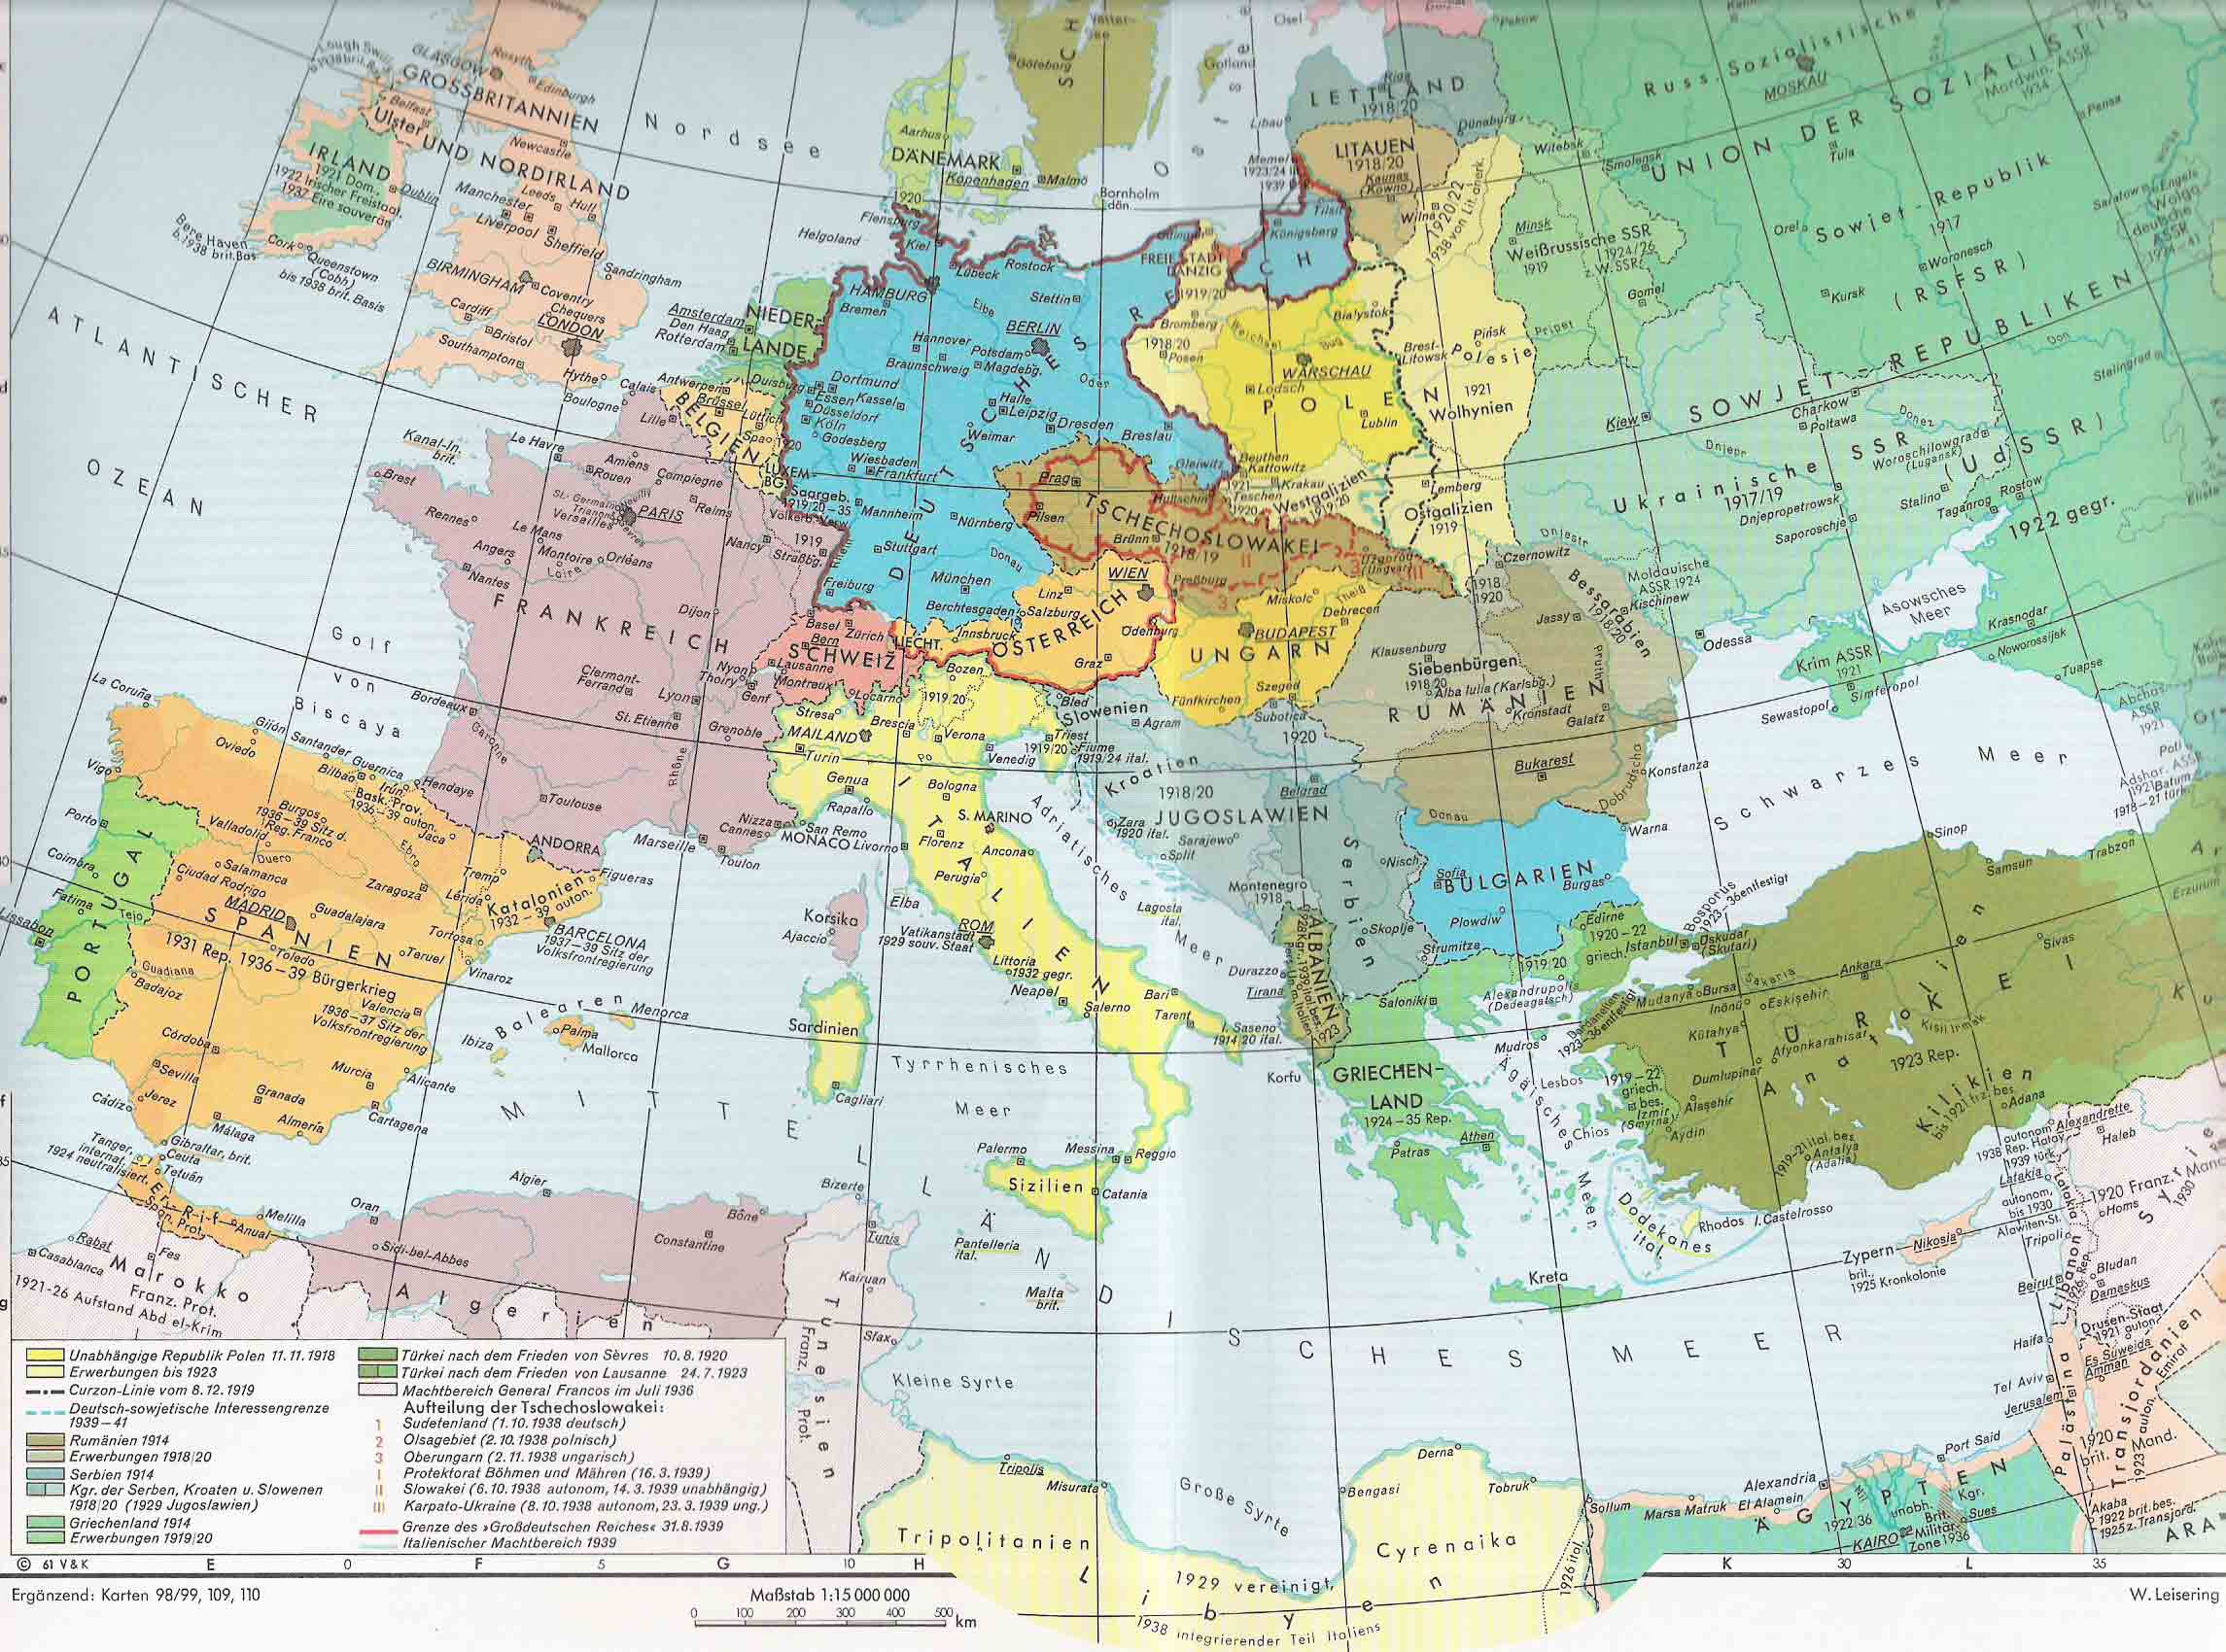 Europa de entreguerras 1918-1939